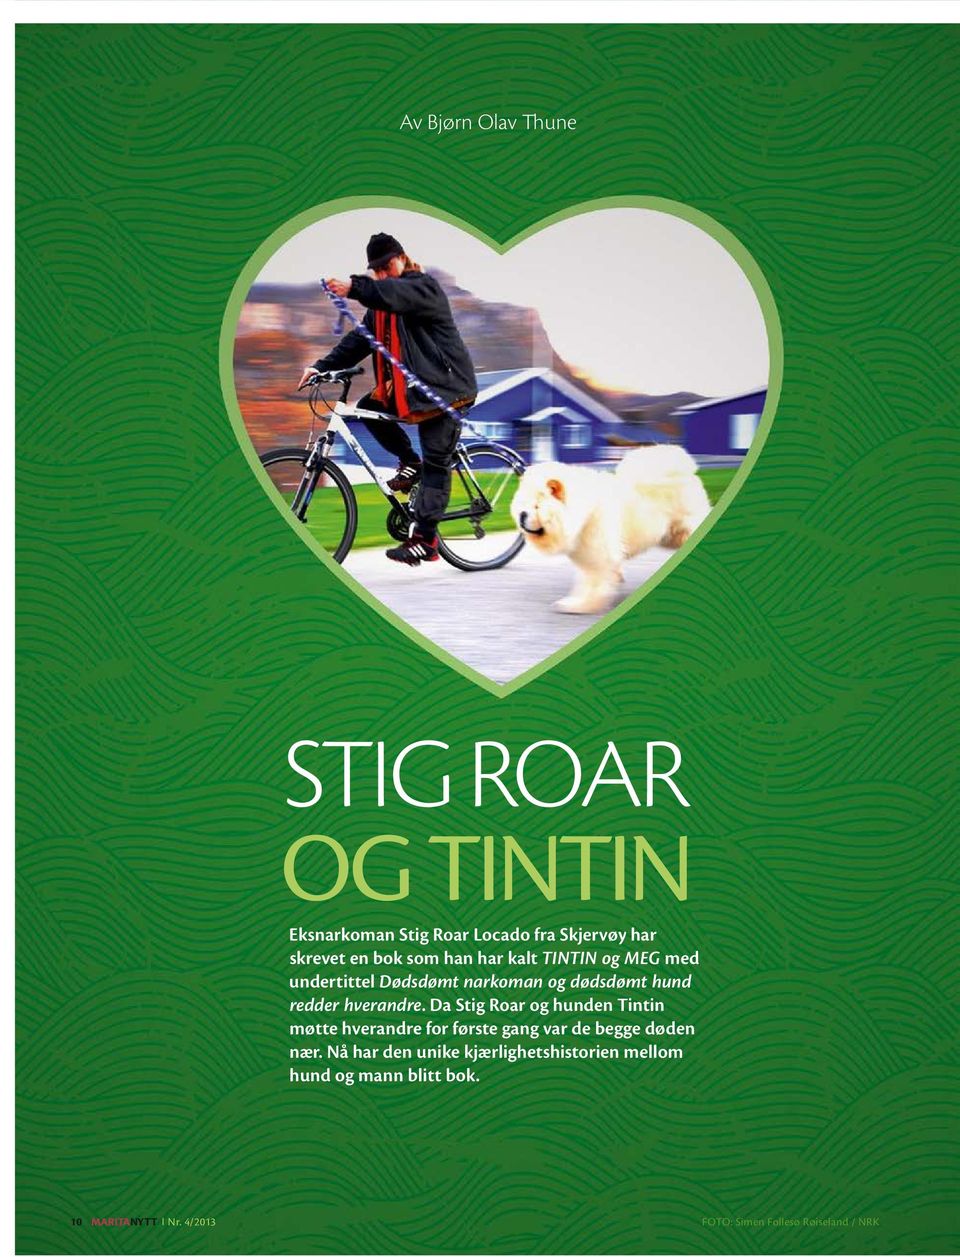 Da Stig Roar og hunden Tintin møtte hverandre for første gang var de begge døden nær.